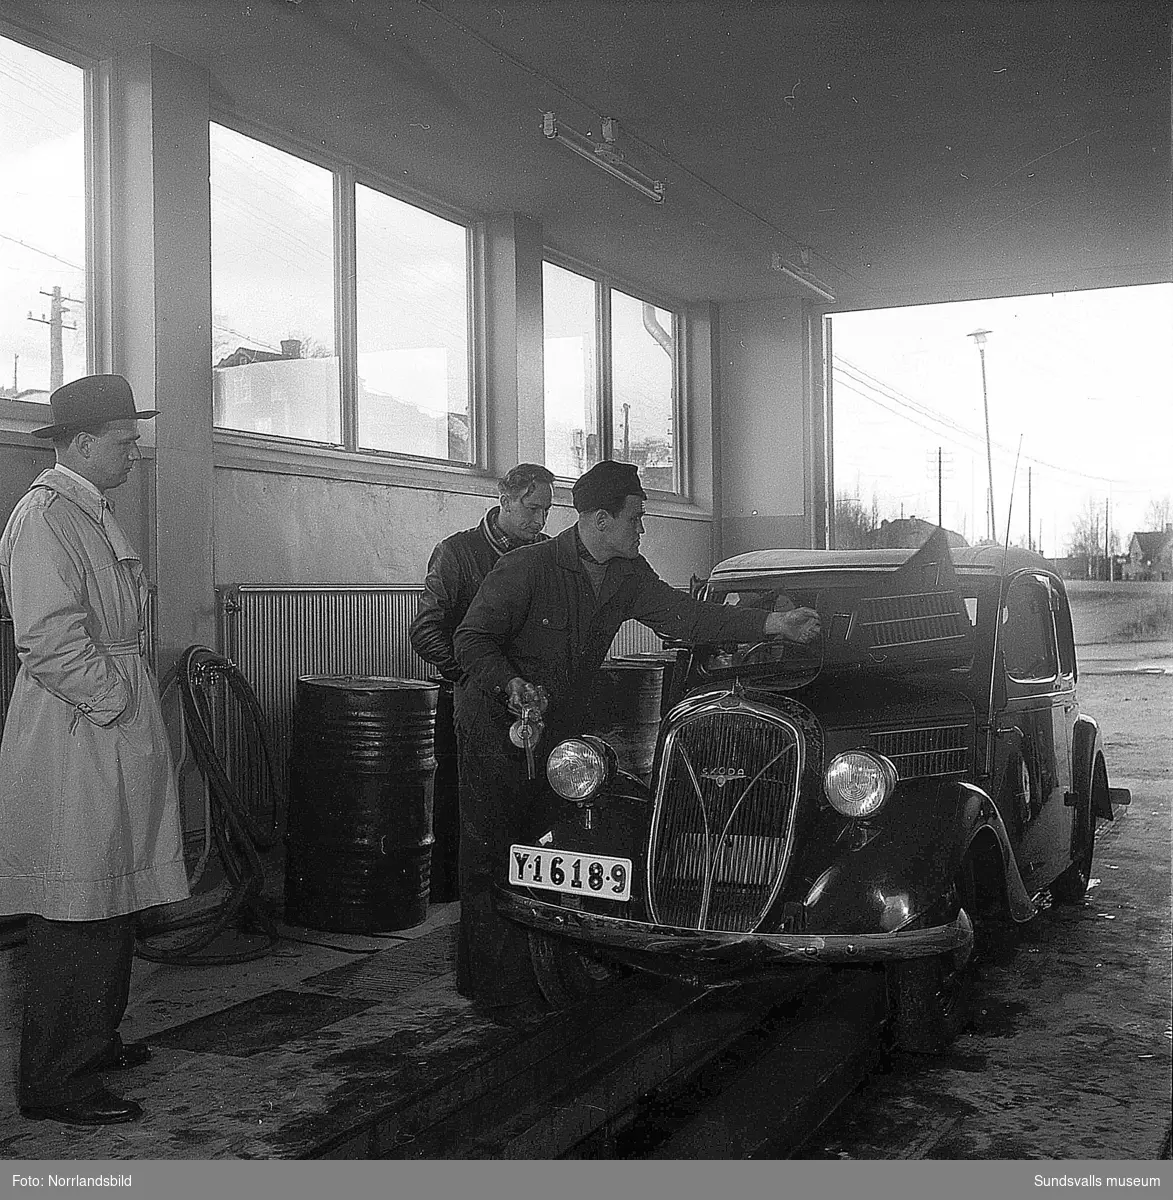 IC Motell i Kvissleby (OK) var Sveriges första motell, startades 1952. Bilder från butik, verkstad och exteriörbilder.